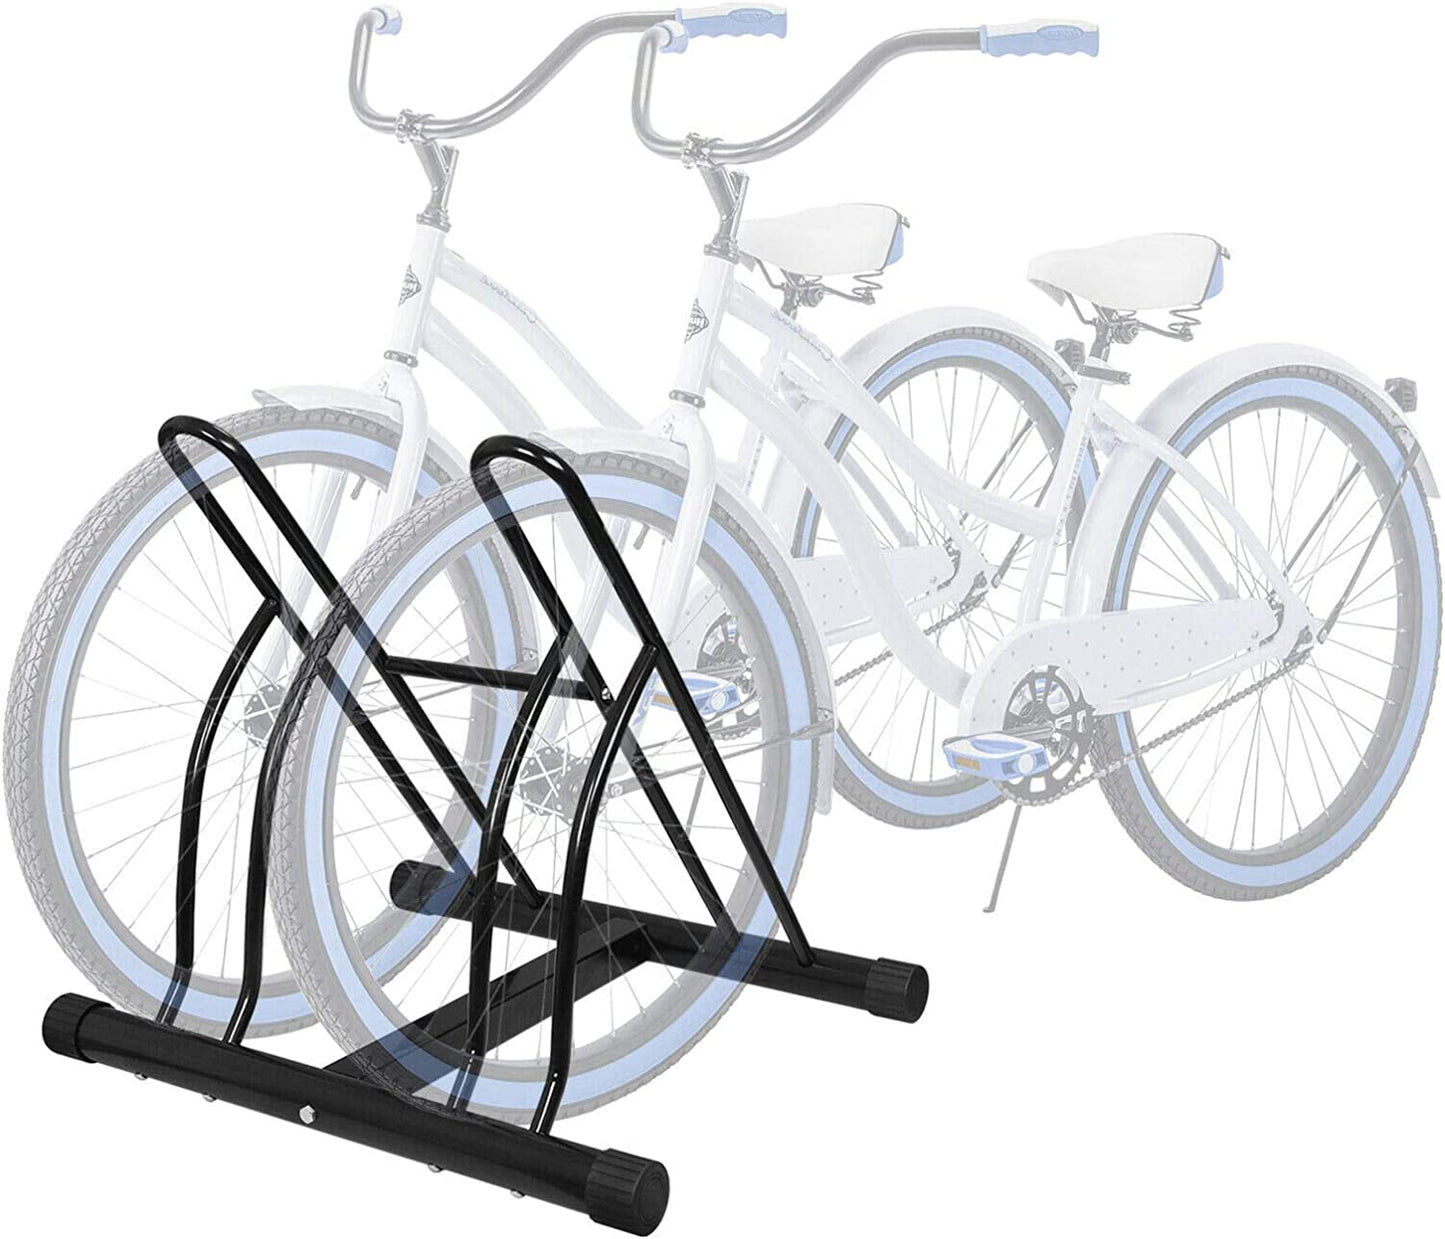 2 Bike Floor Stand Floor Bicycle Rack, Free Standing Indoor Outdoor Garge Bicycle Rack for Mountain Bikes Road Bikes